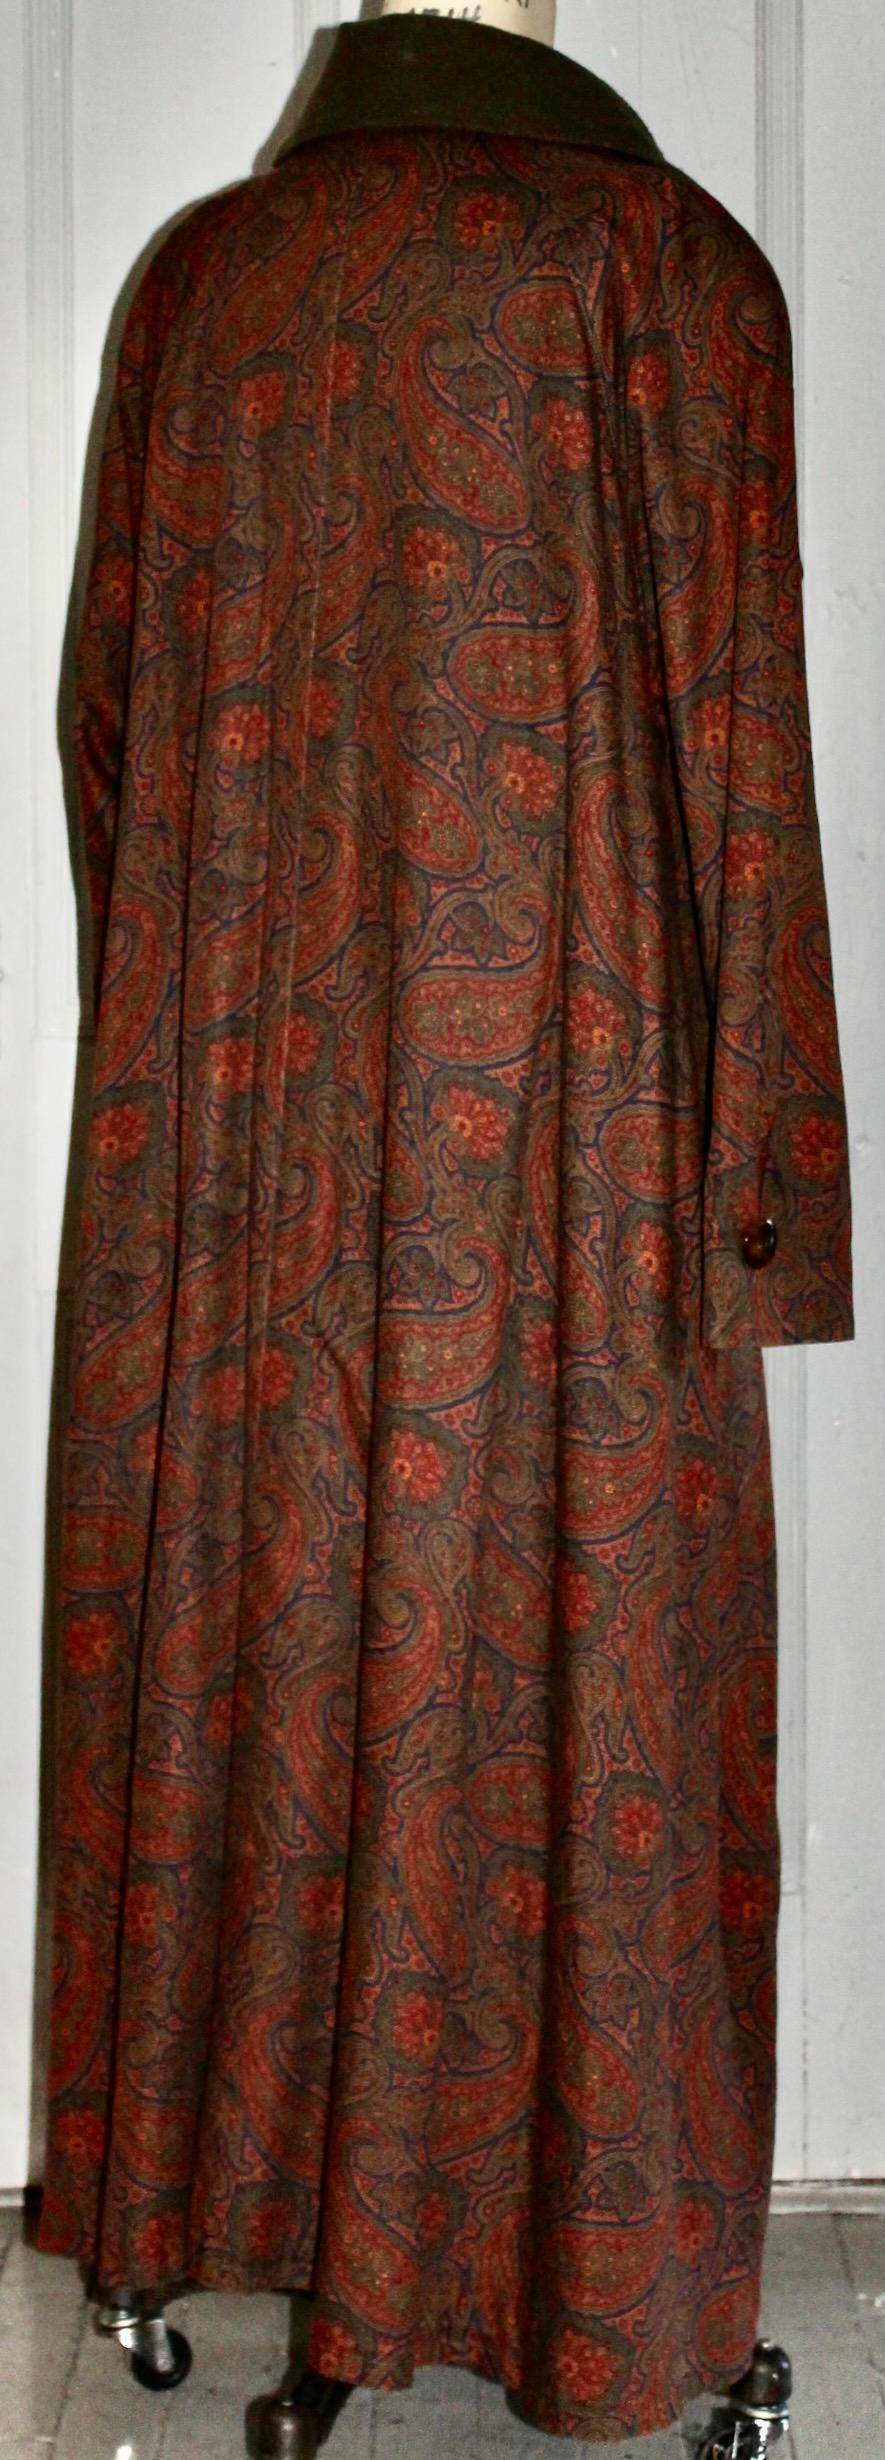 Bill Blass Paisley Edwardian Style Dress Coat 1